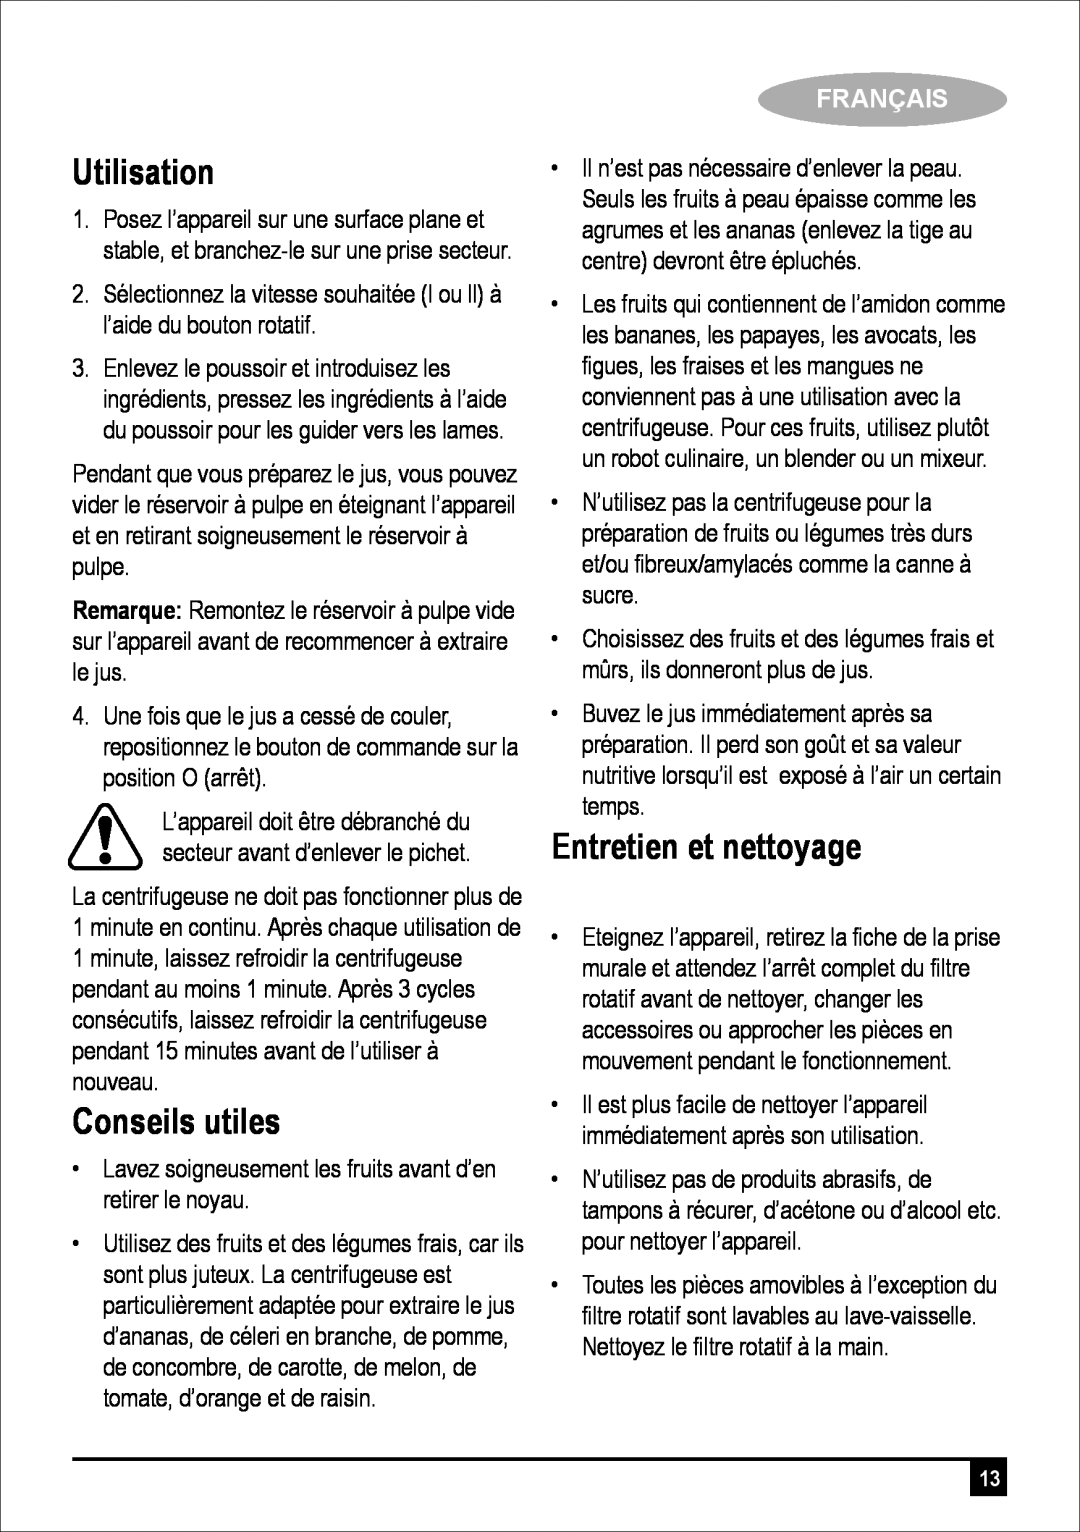 Black & Decker JE400 manual Utilisation, Conseils utiles, Entretien et nettoyage, Français 